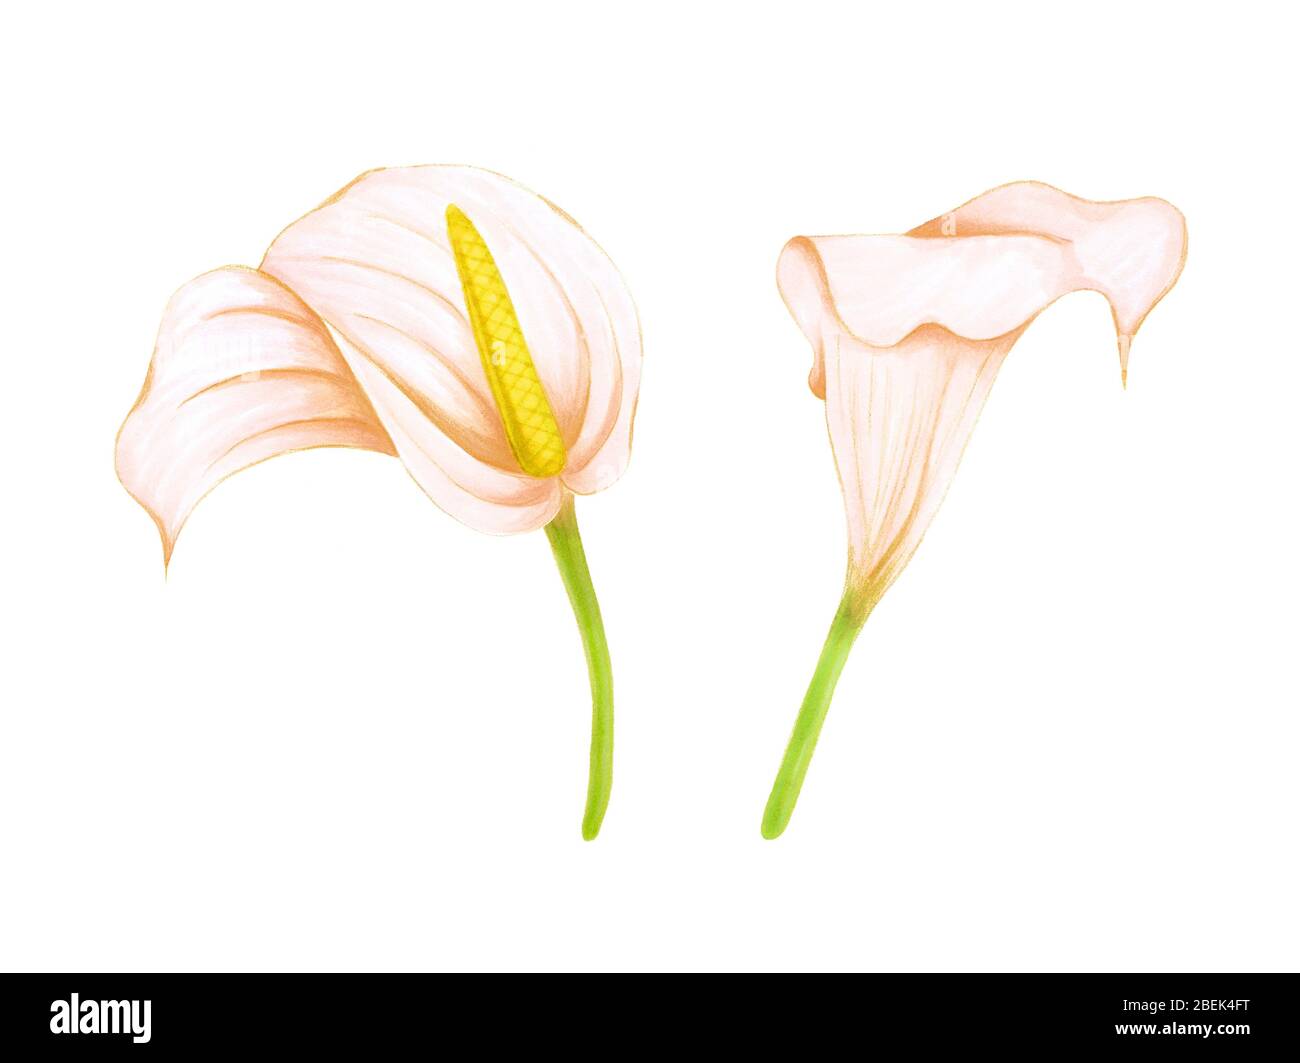 Jeu de fleurs douces rose-beige à dessin manuel anthurium et zantedeschia sur fond blanc. Élément exotique décoratif pour cartes d'invitation, textile Banque D'Images